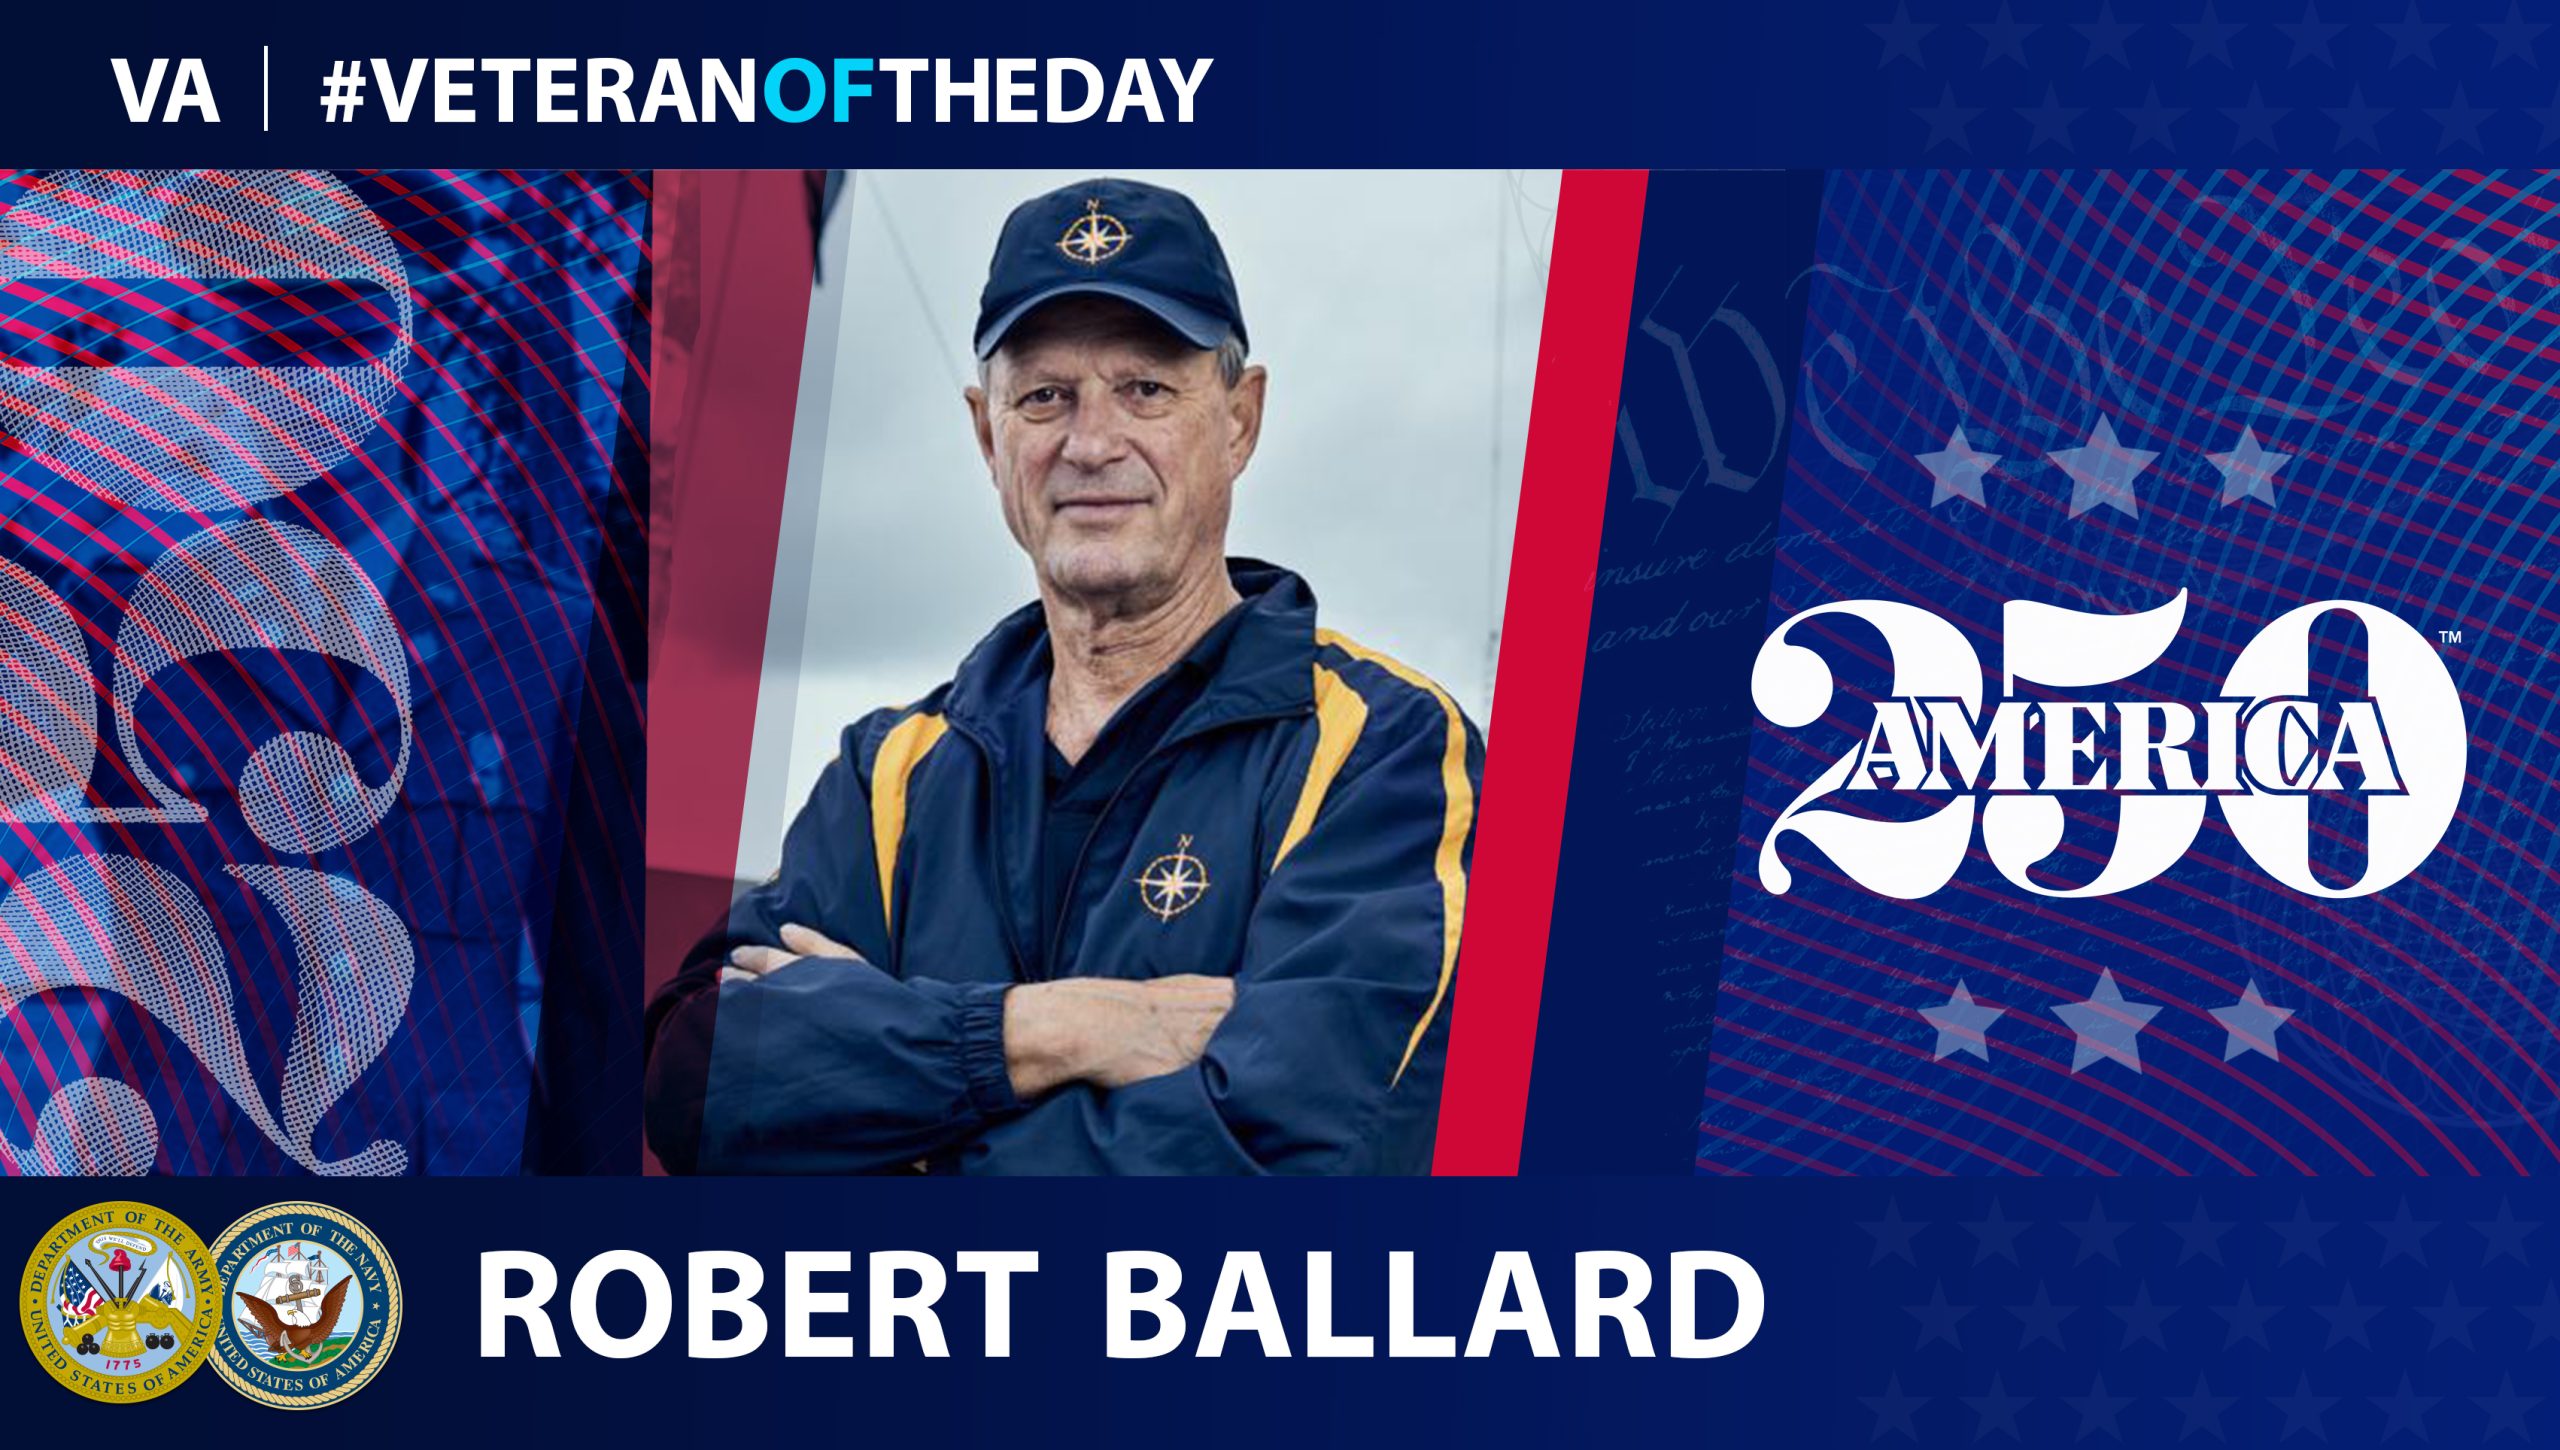 Robert Ballard is today's Veteran of the Day.